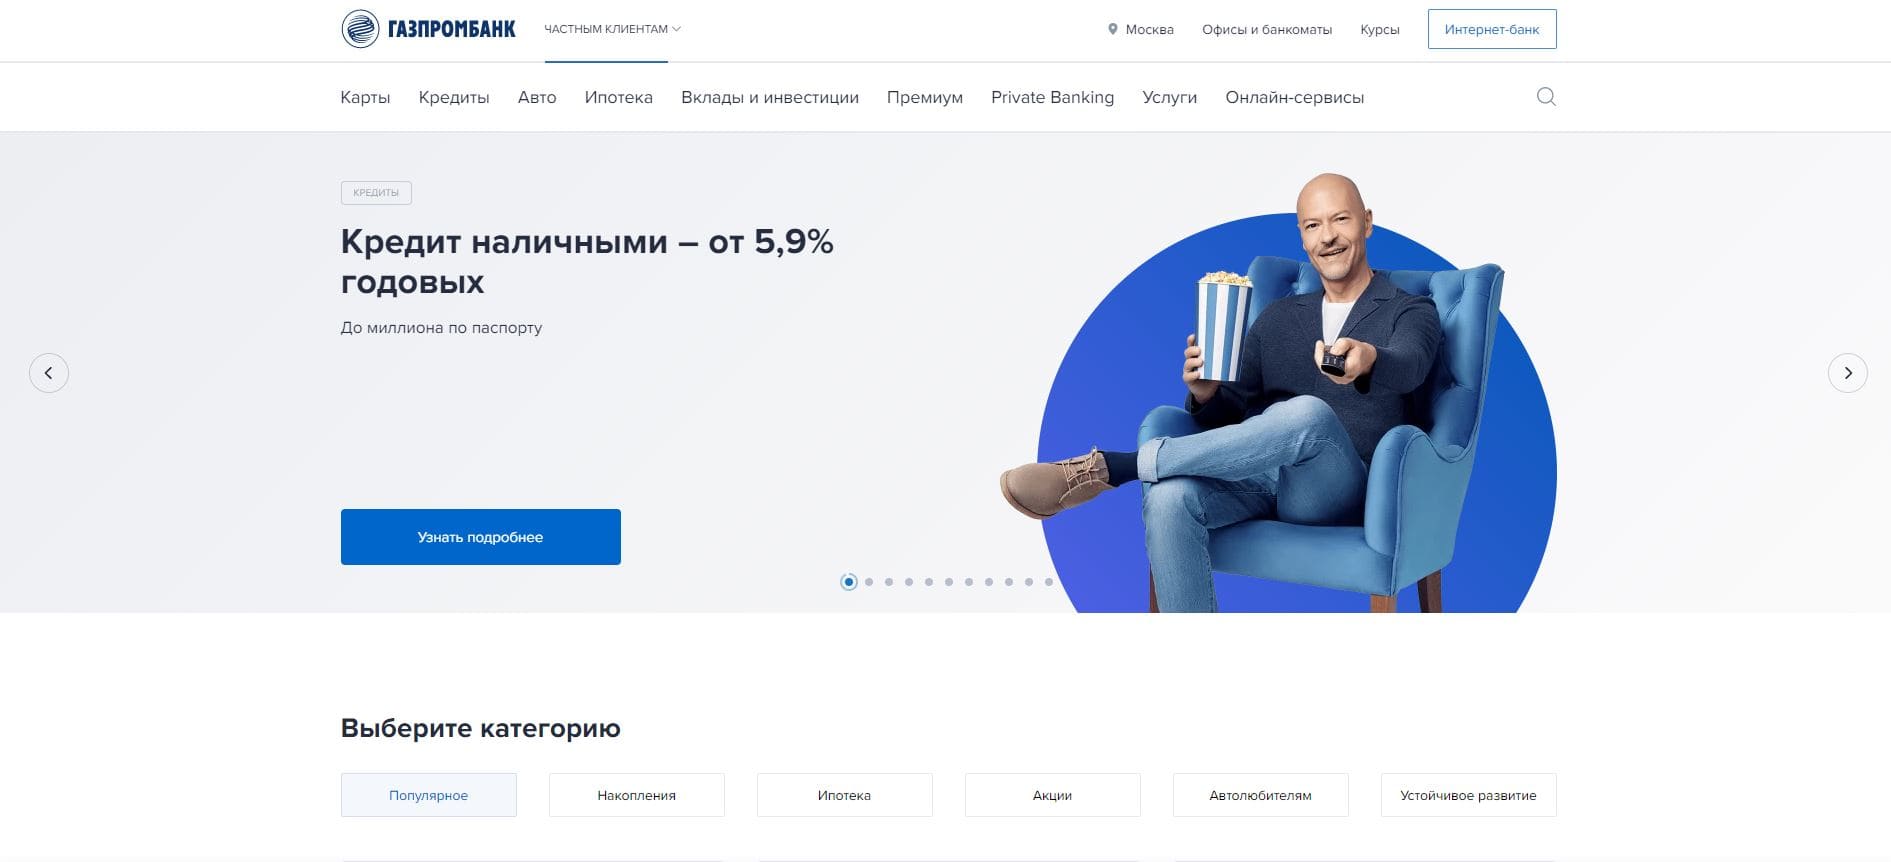 Газпромбанк — Личный кабинет - Главная сайта